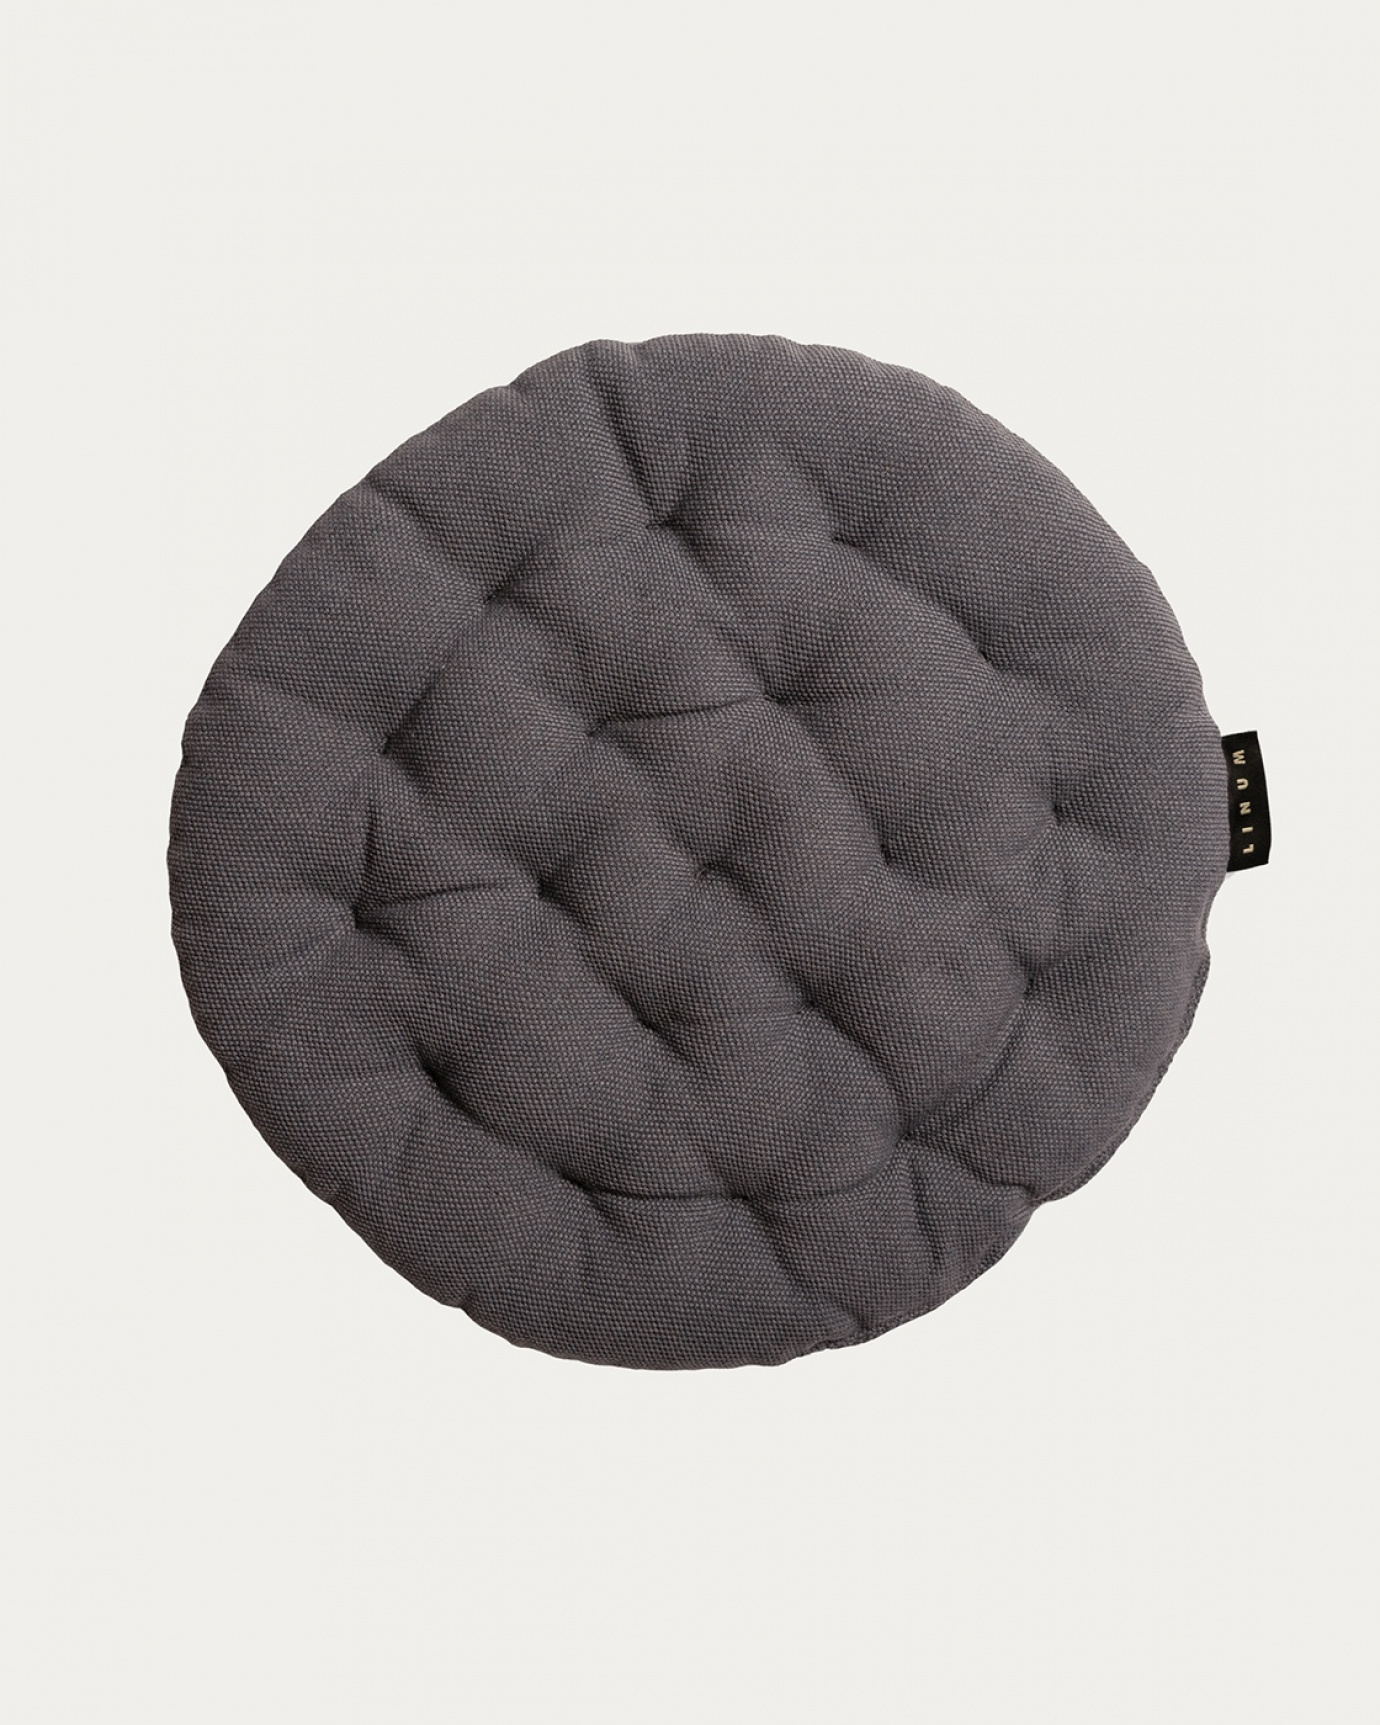 Immagine prodotto grigio granito PEPPER cuscini sedie di cotone con imbottitura in poliestere di LINUM DESIGN. Dimensioni ø37 cm.